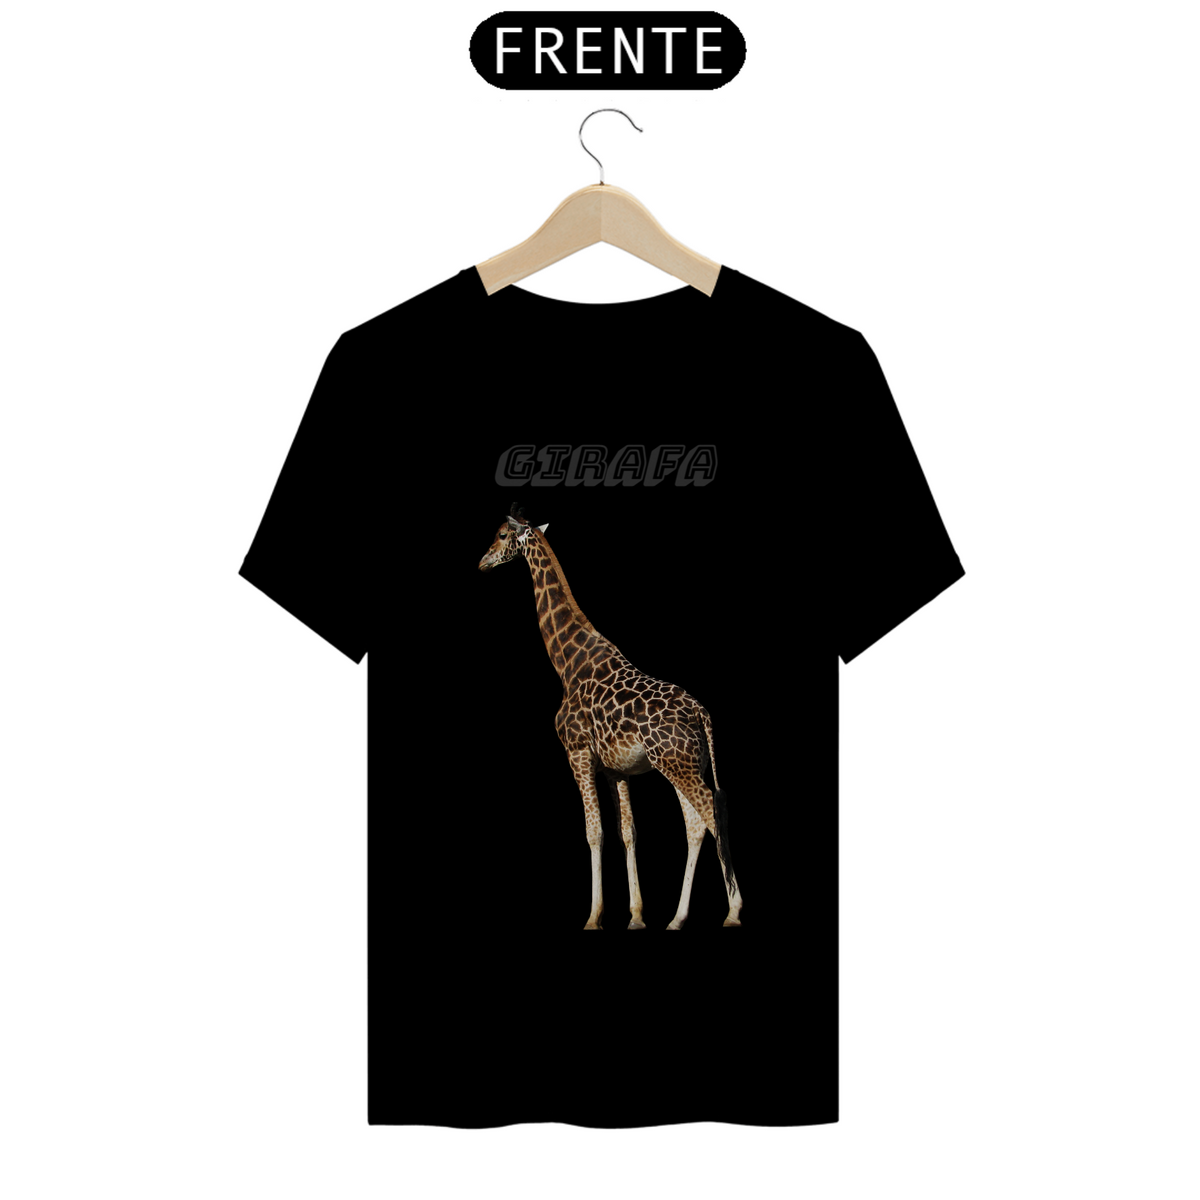 Nome do produto: Girafa